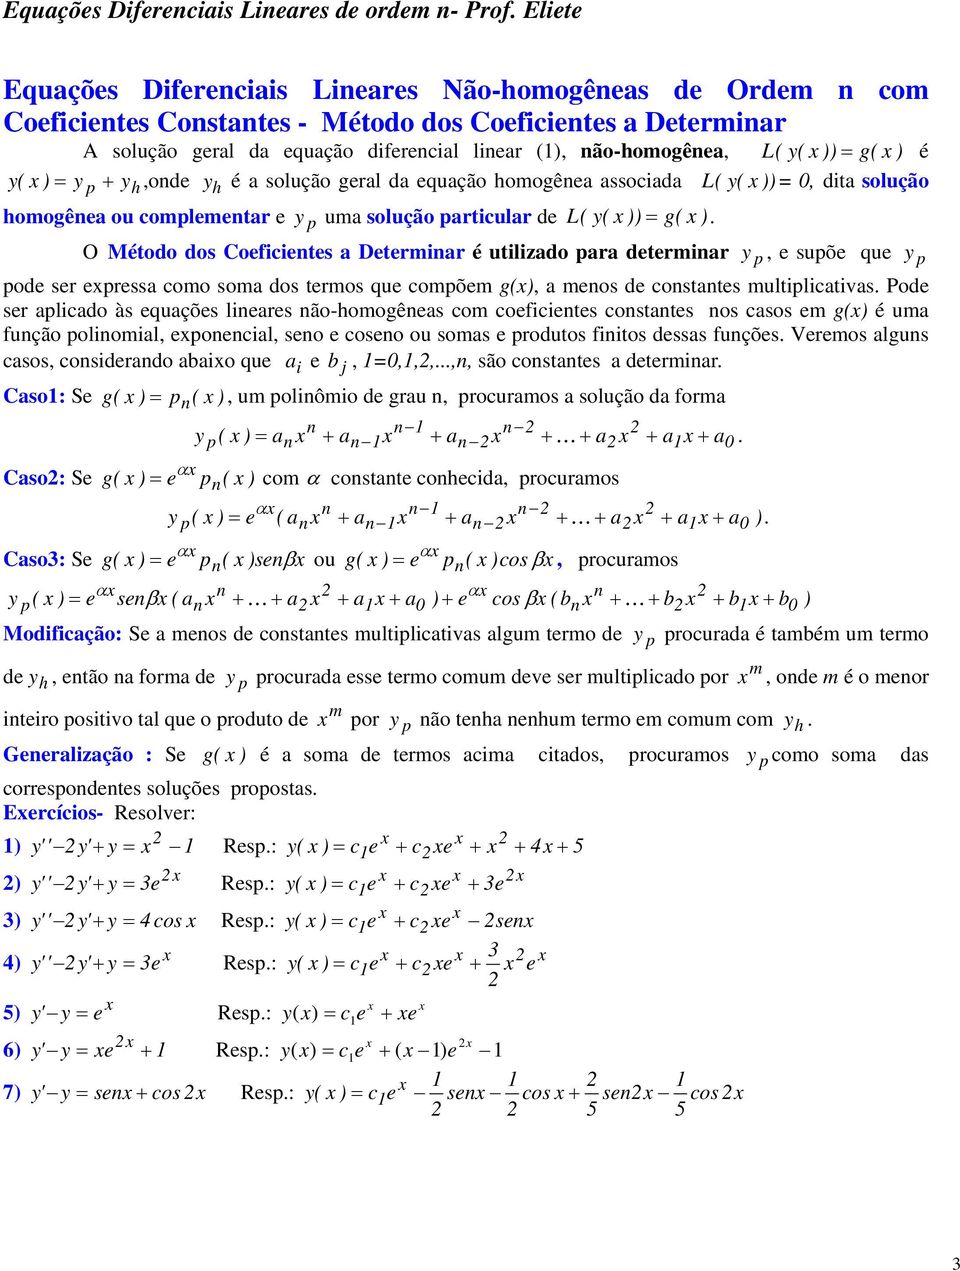 O Método dos Coeficietes a Determiar é utilizado para determiar y p, e supõe que y p pode ser expressa como soma dos termos que compõem g(x), a meos de costates multiplicativas.